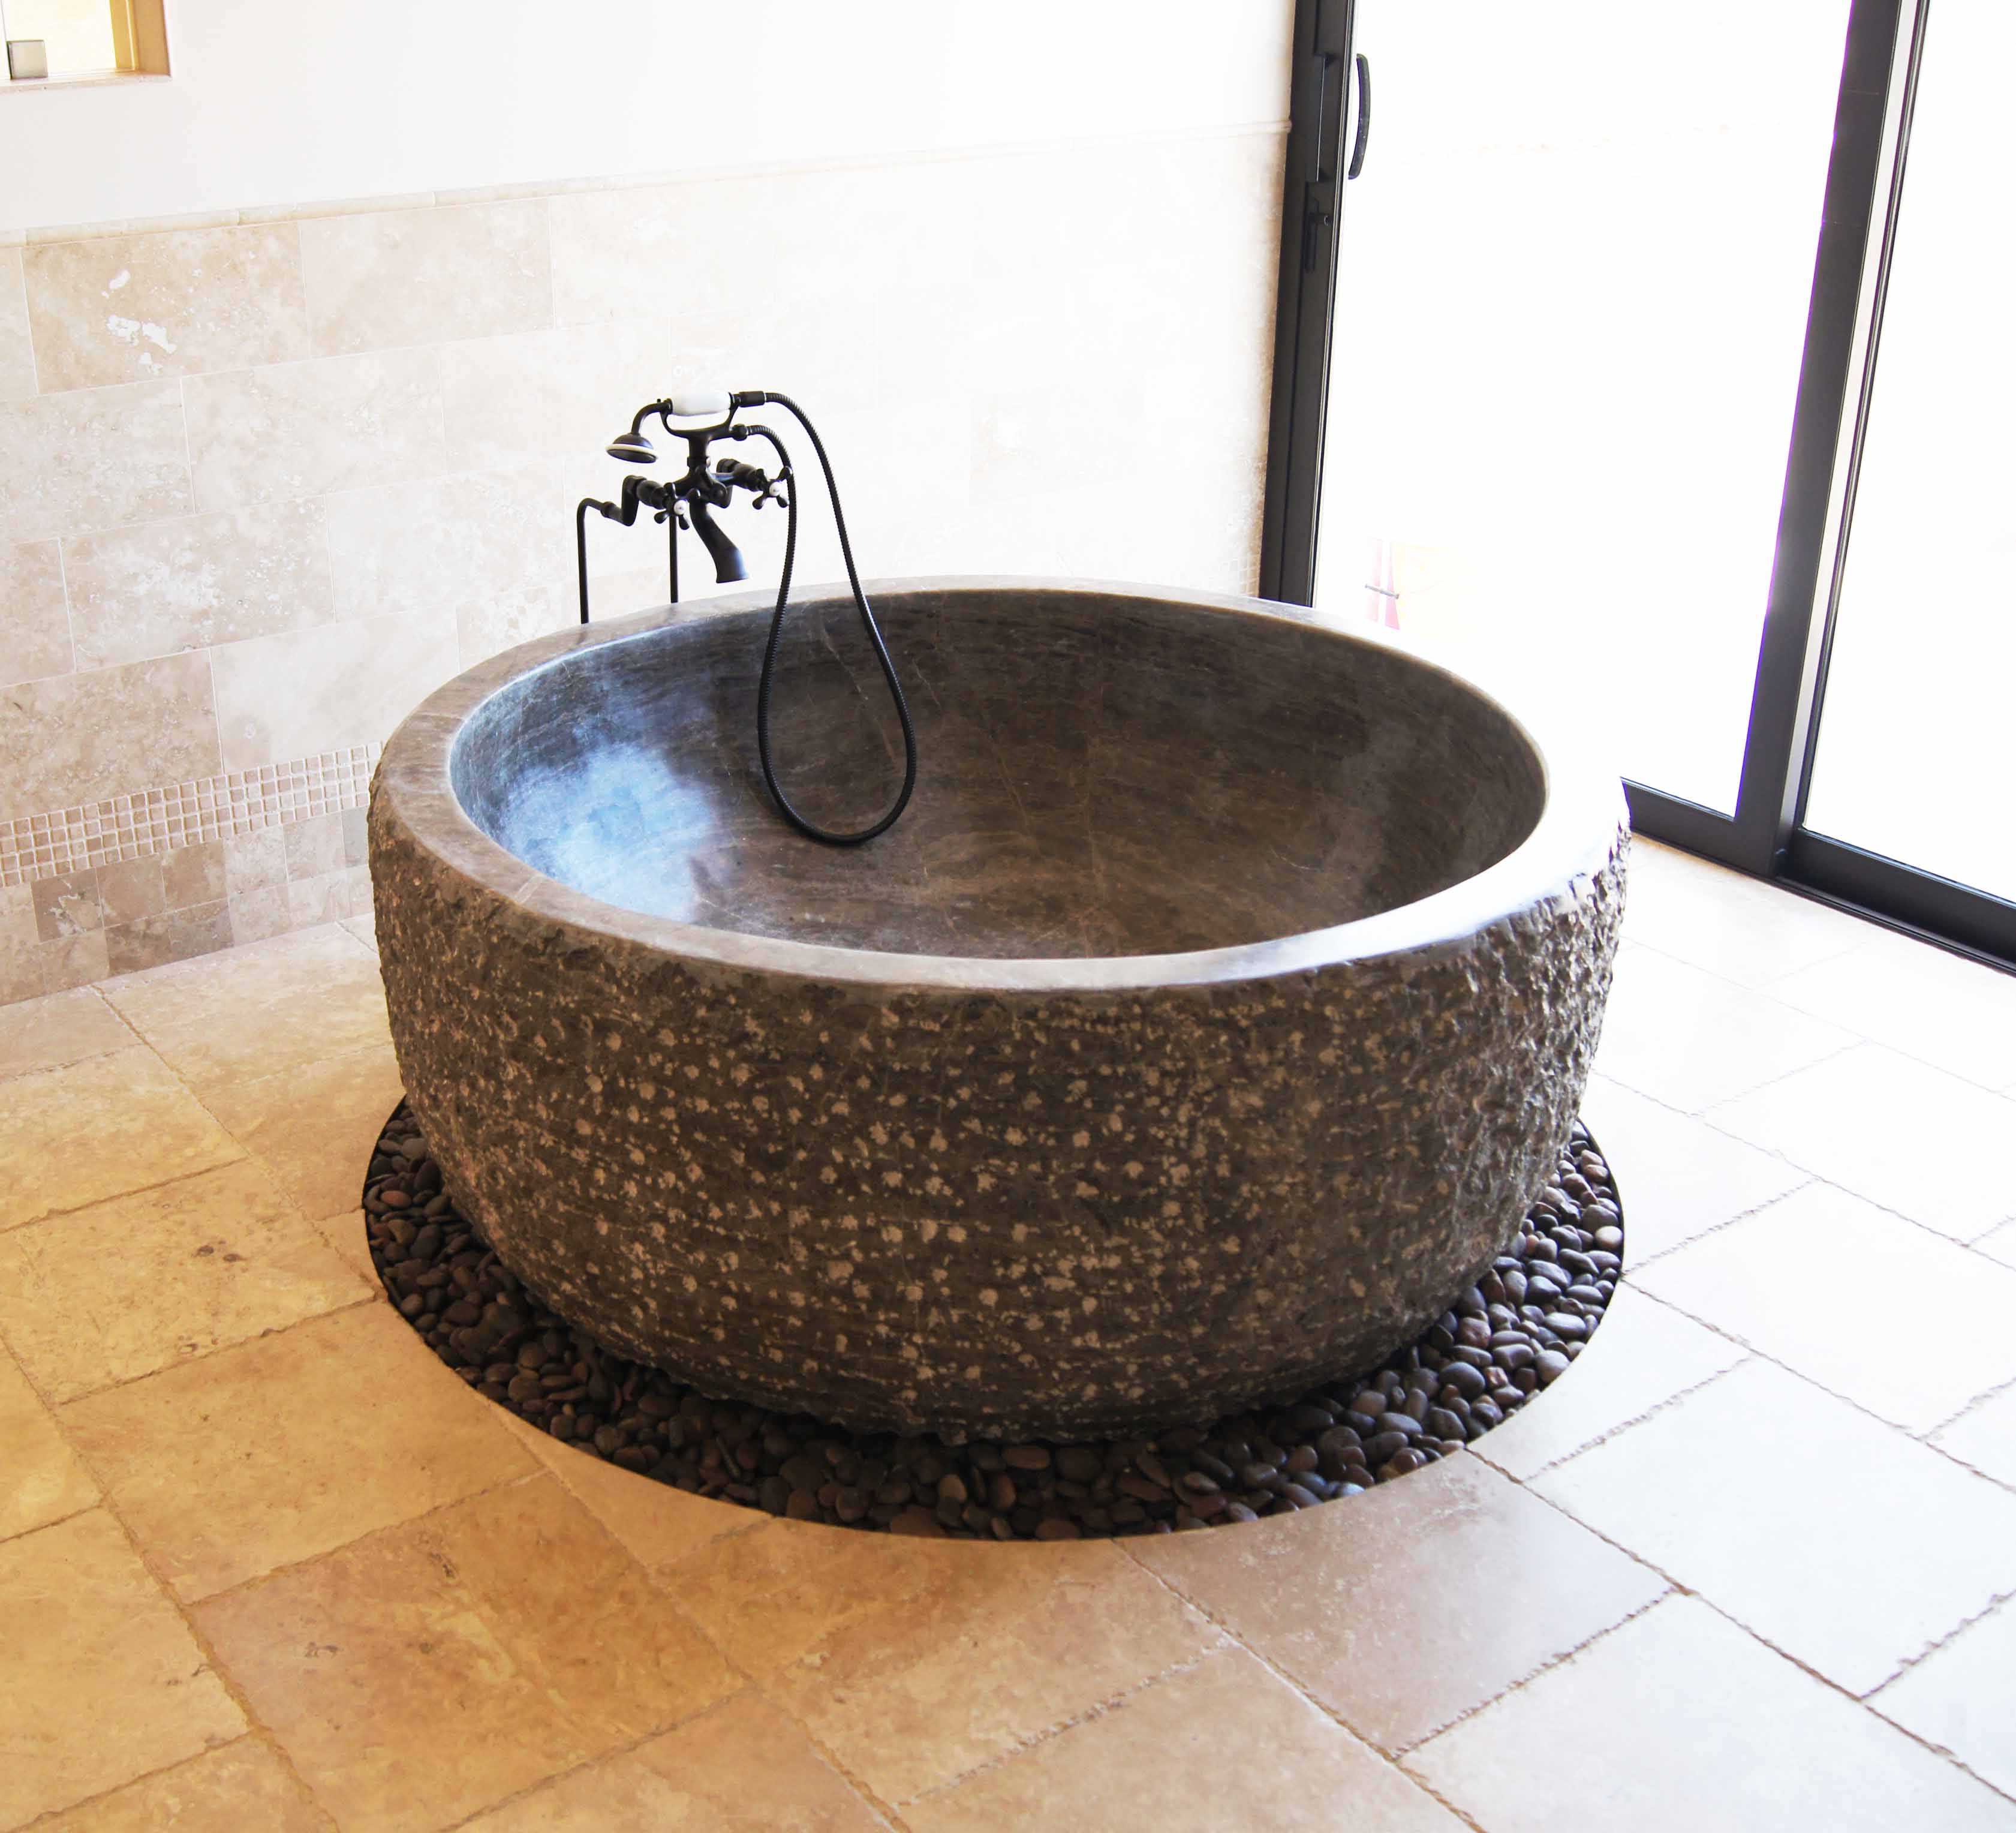 Chiseled outside with polished inside round stone tub